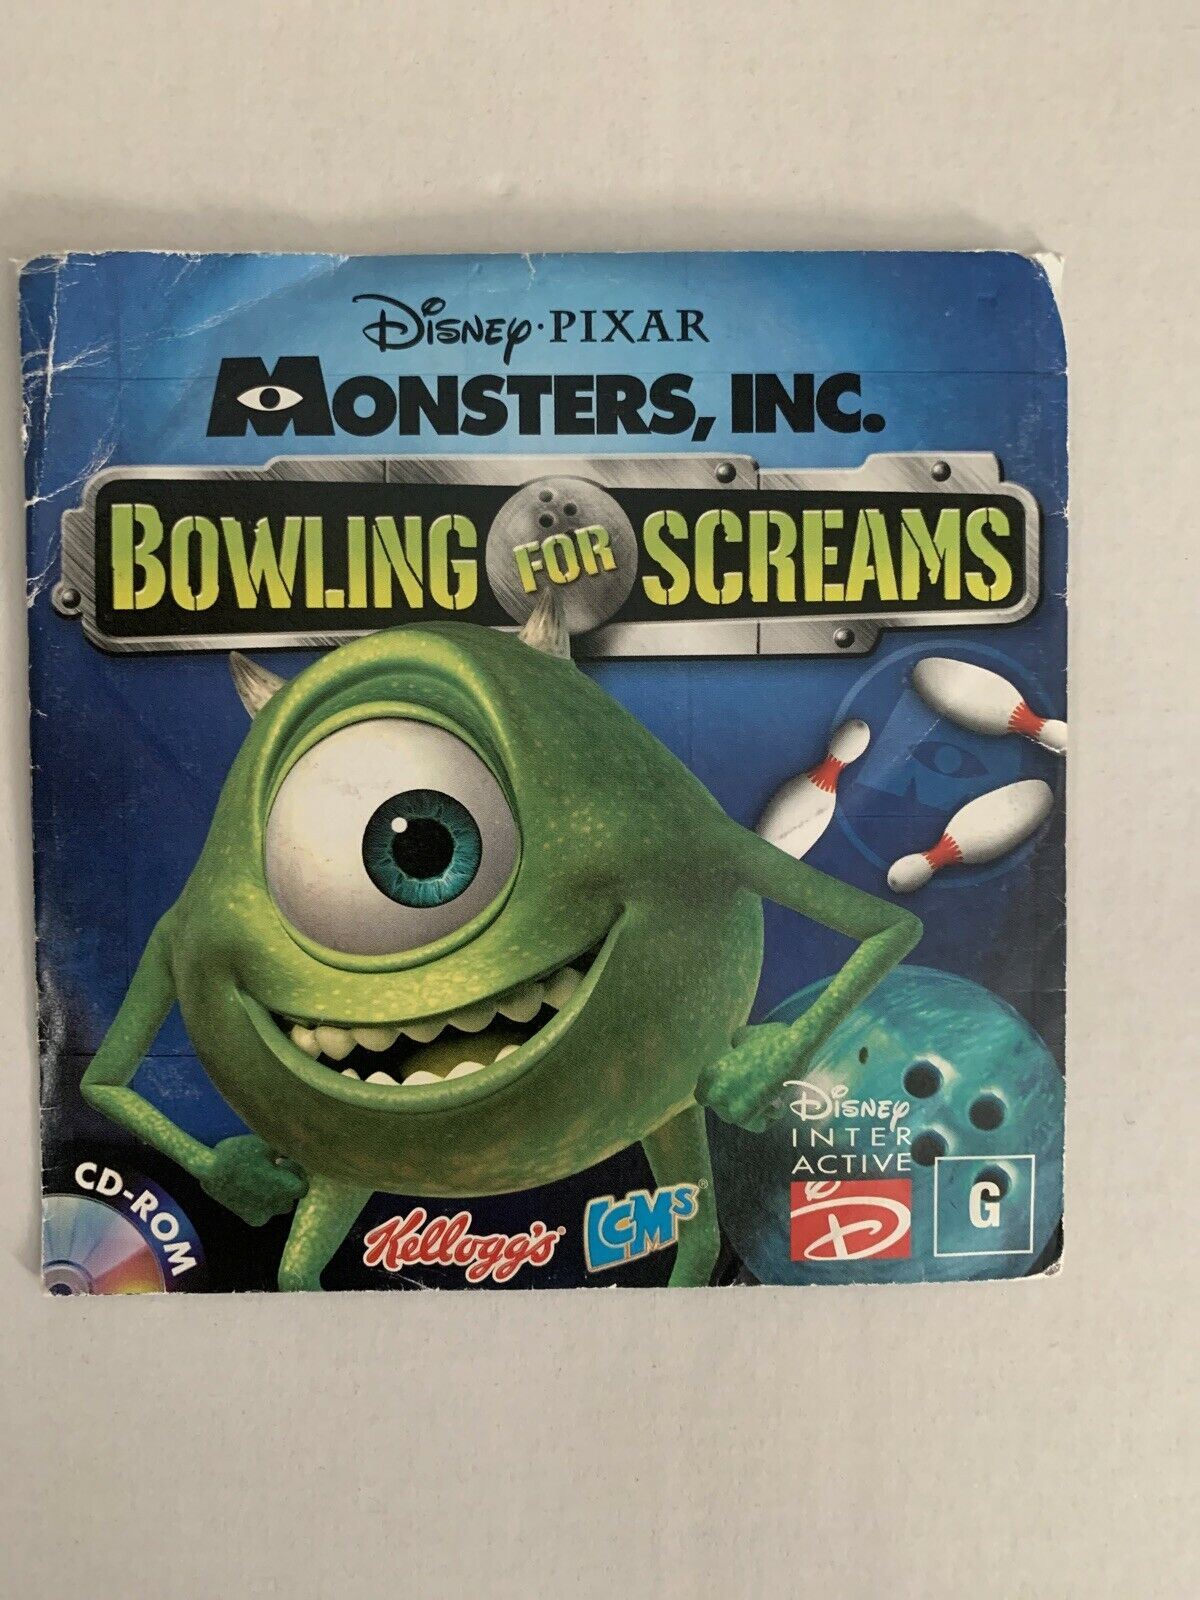 Disney Pixar Monsters, Inc. Bowling For Screams CD 2001 